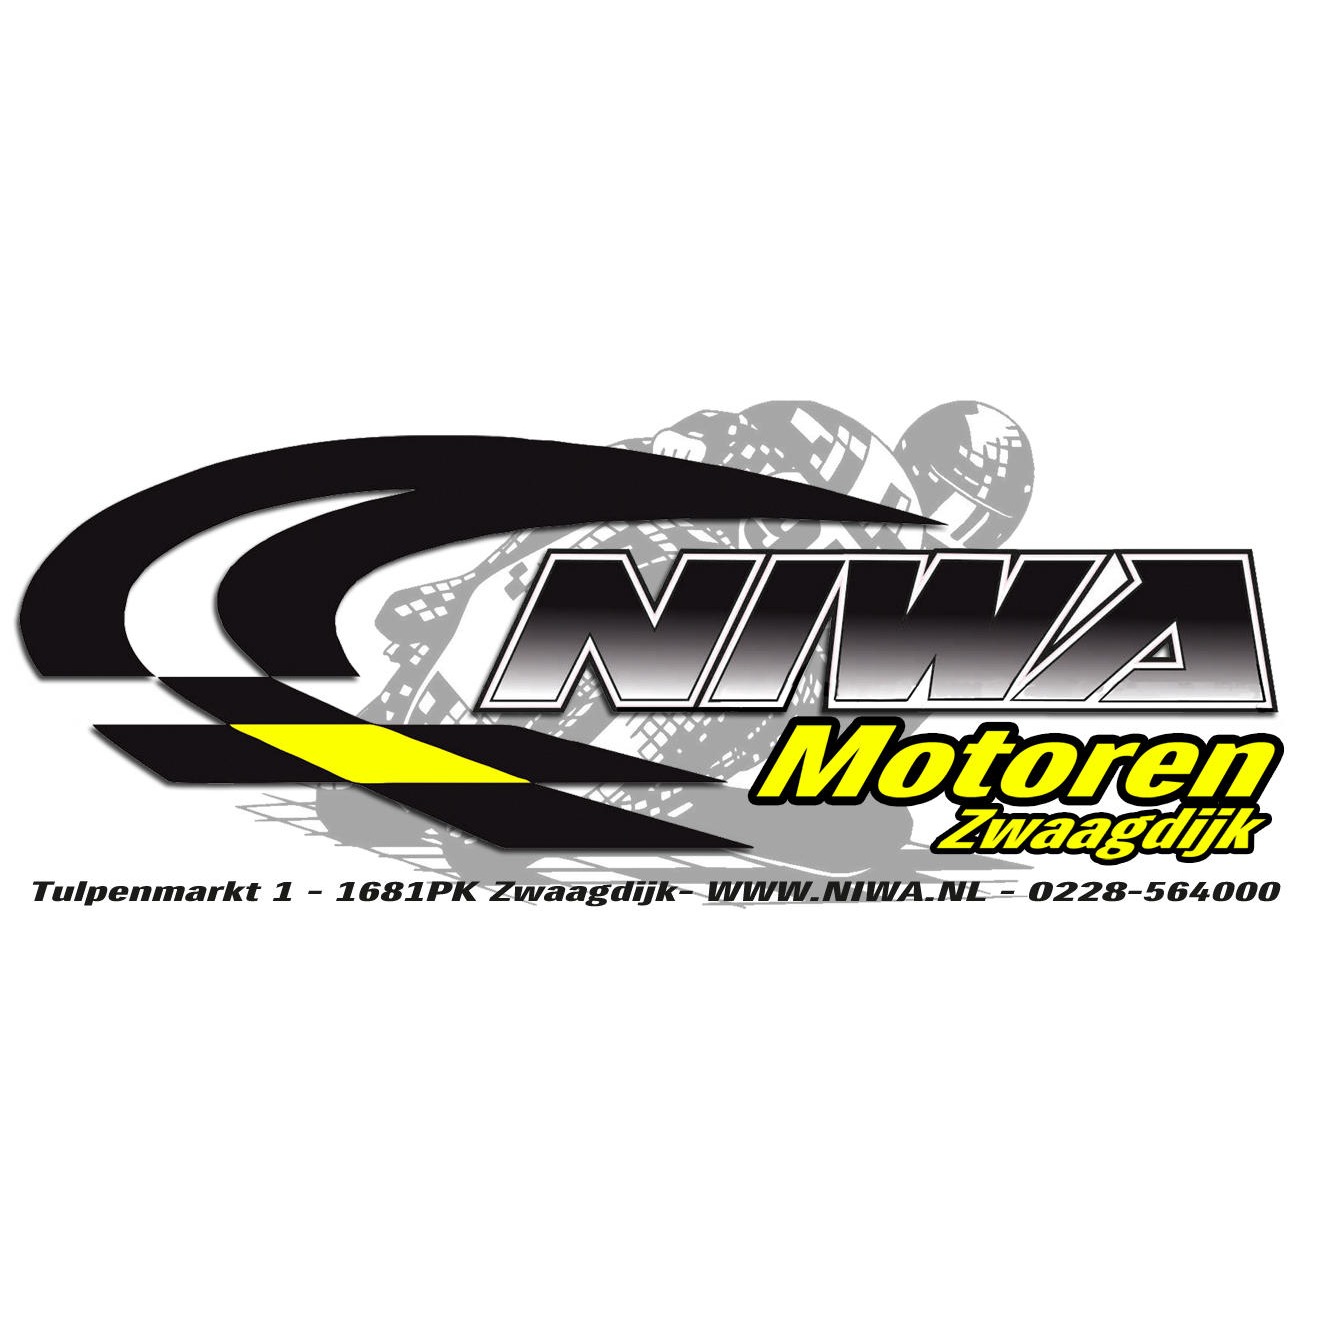 NIWA Motoren Logo